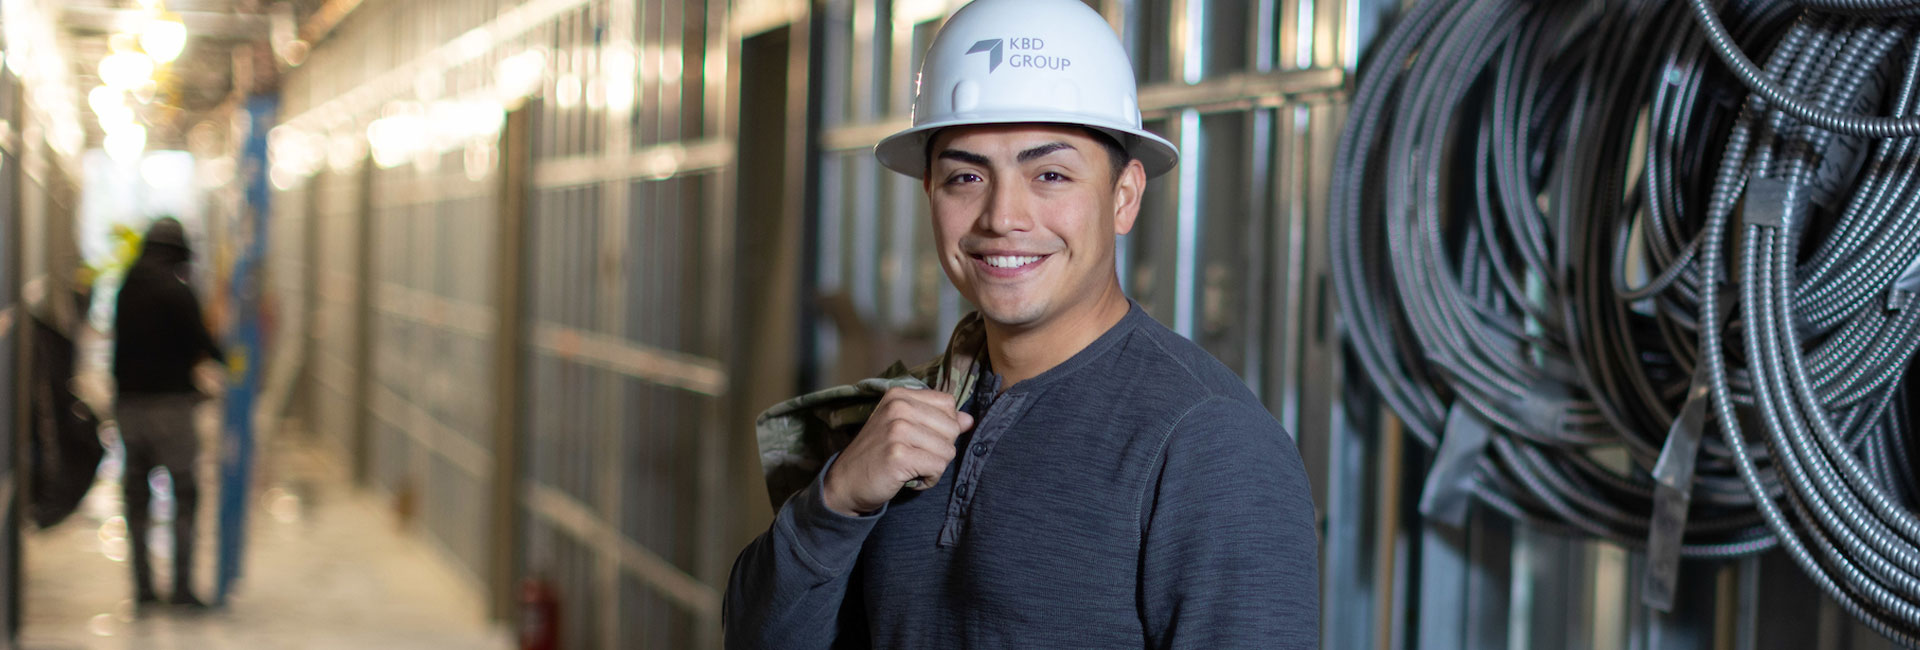 construction management student on construction job site